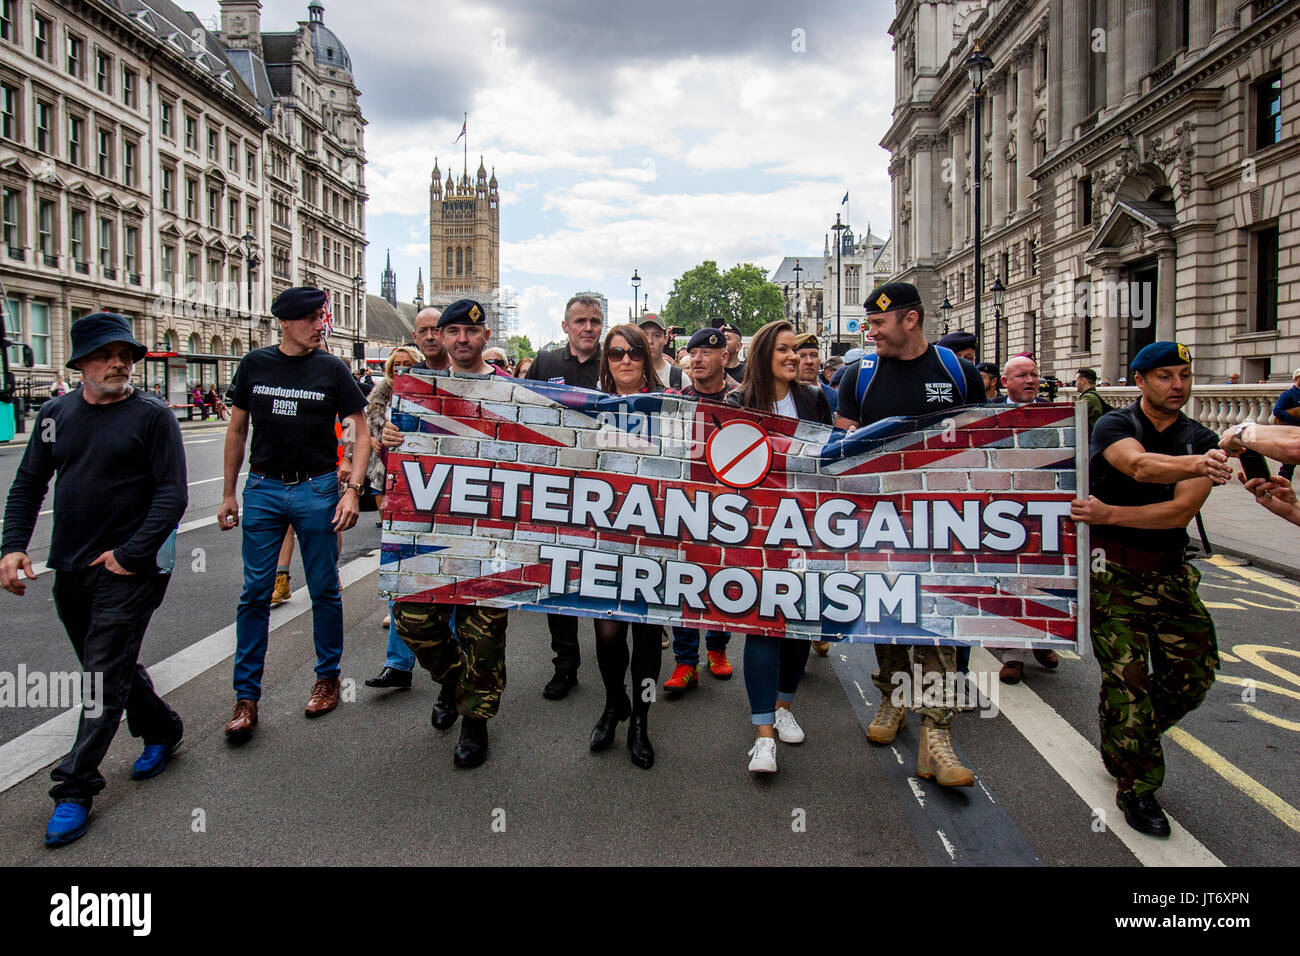 British Army Veterans März Downing Street zu fordern, dass die Regierung nicht mehr zur Bekämpfung des islamistischen Terrorismus, Whitehall, London, UK Stockfoto